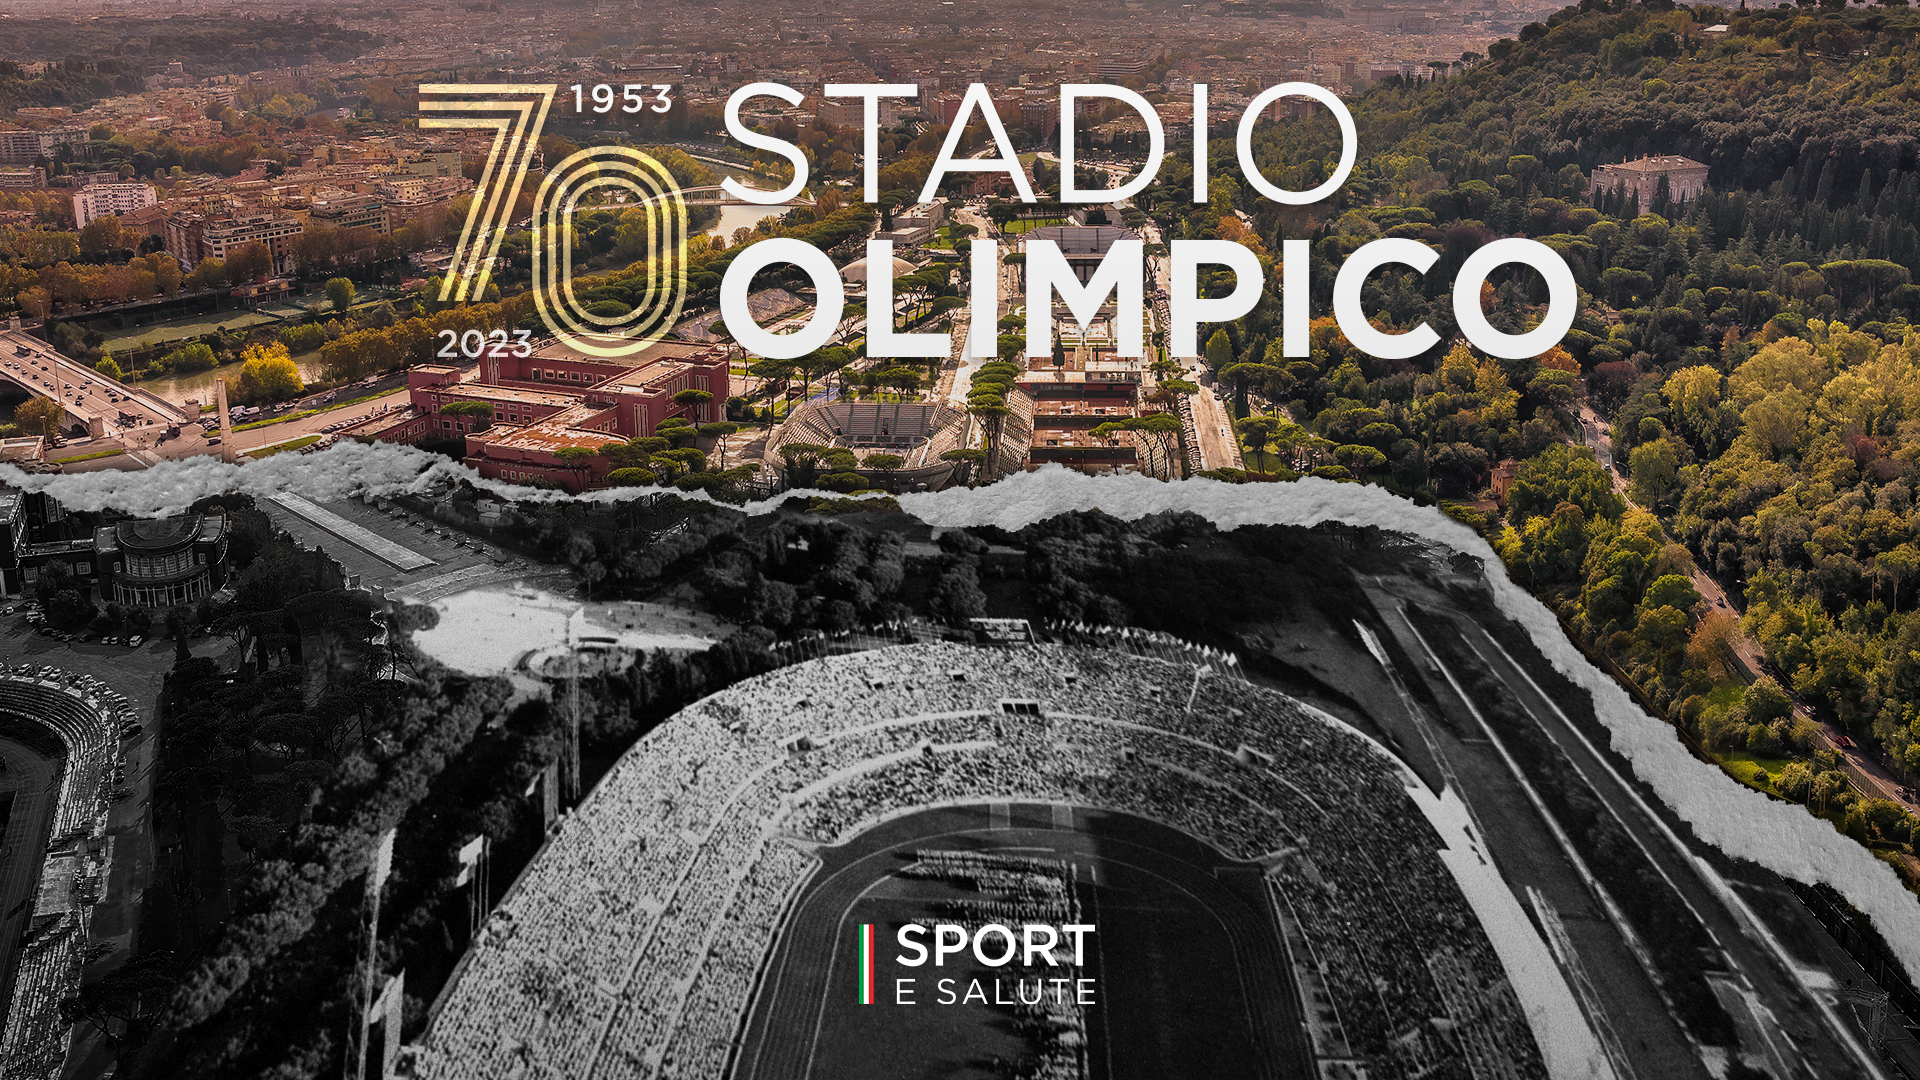 70 bougies pour le Stadio Olimpico.  Cozzoli : « c’est un trésor d’émotions qui se renouvelle chaque jour ».  Événements programmés, initiatives et activités sociales